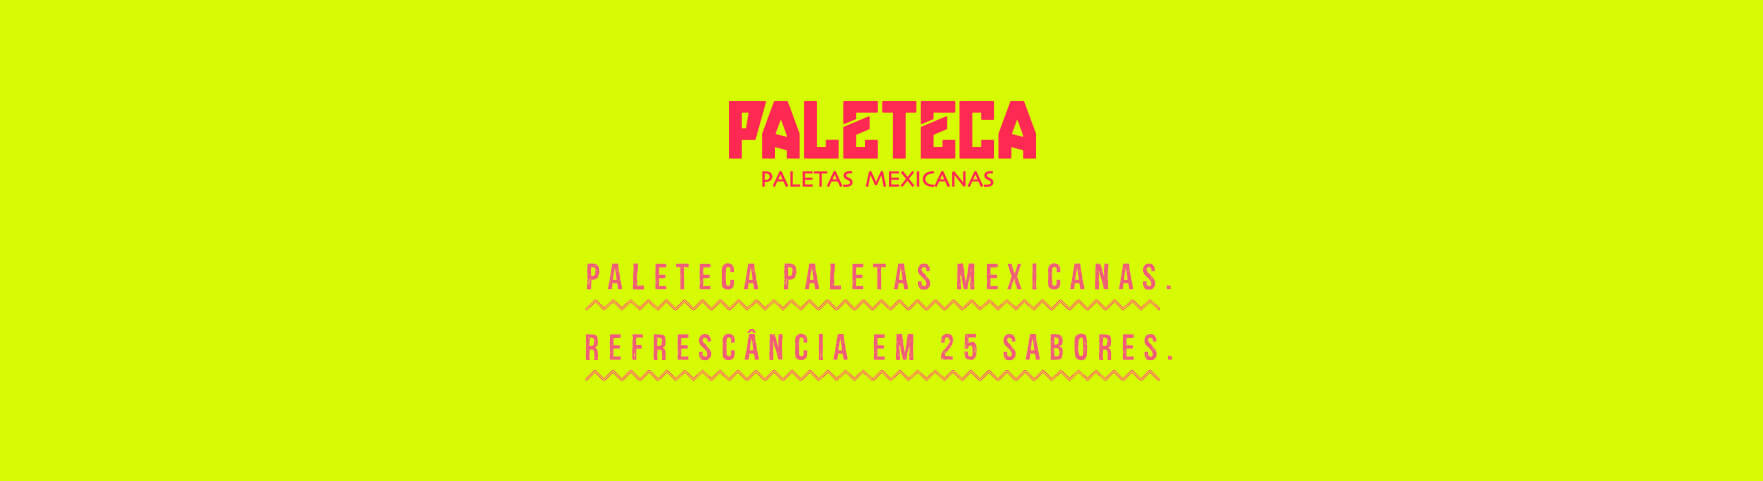 Paleteca